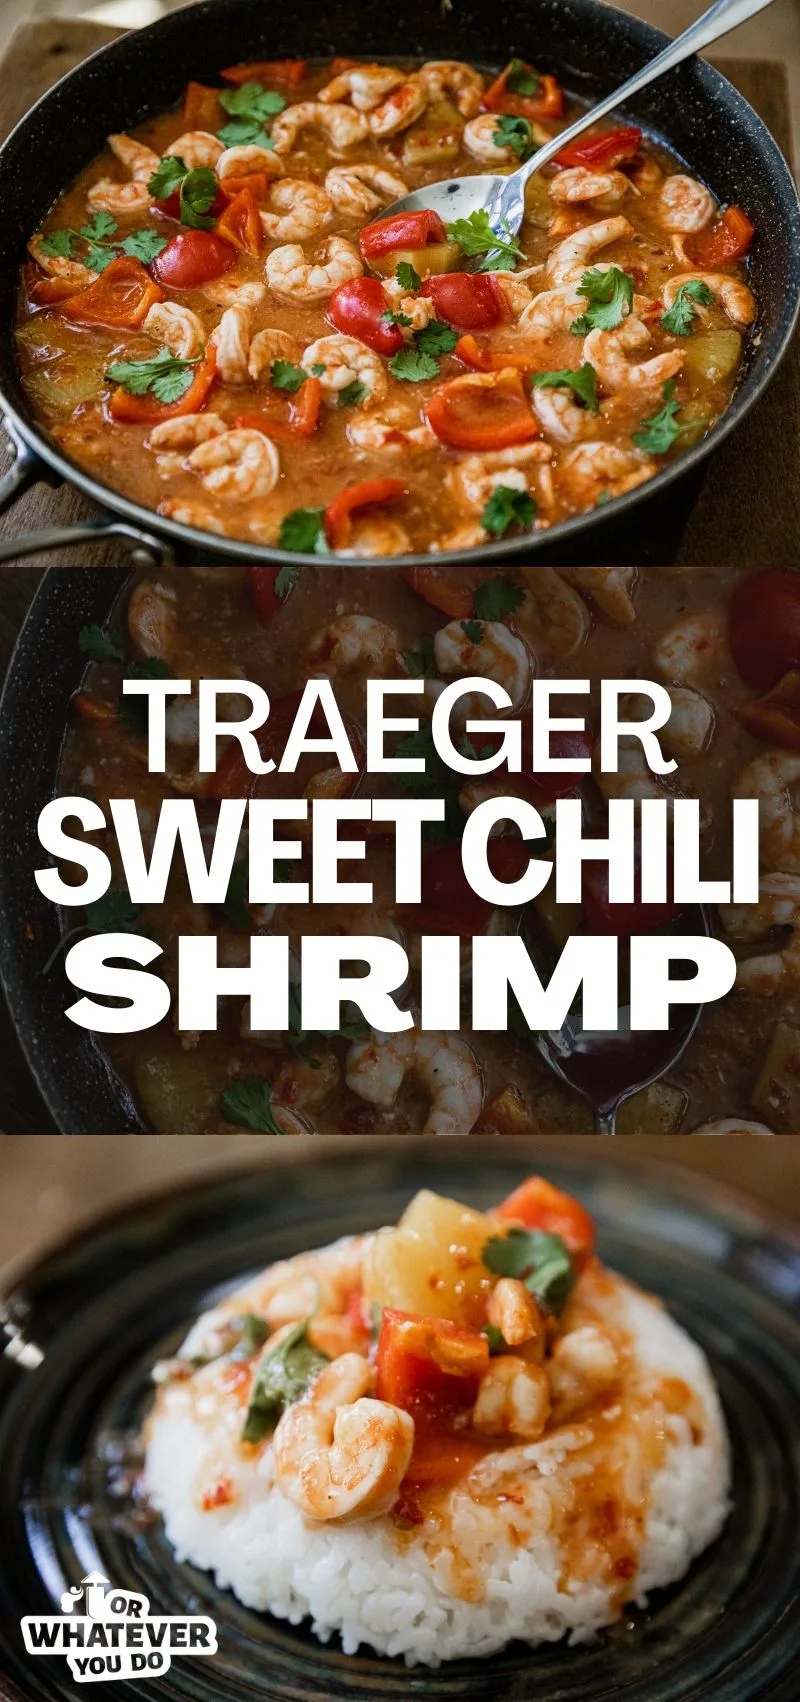 Traeger Sweet Chili Shrimp